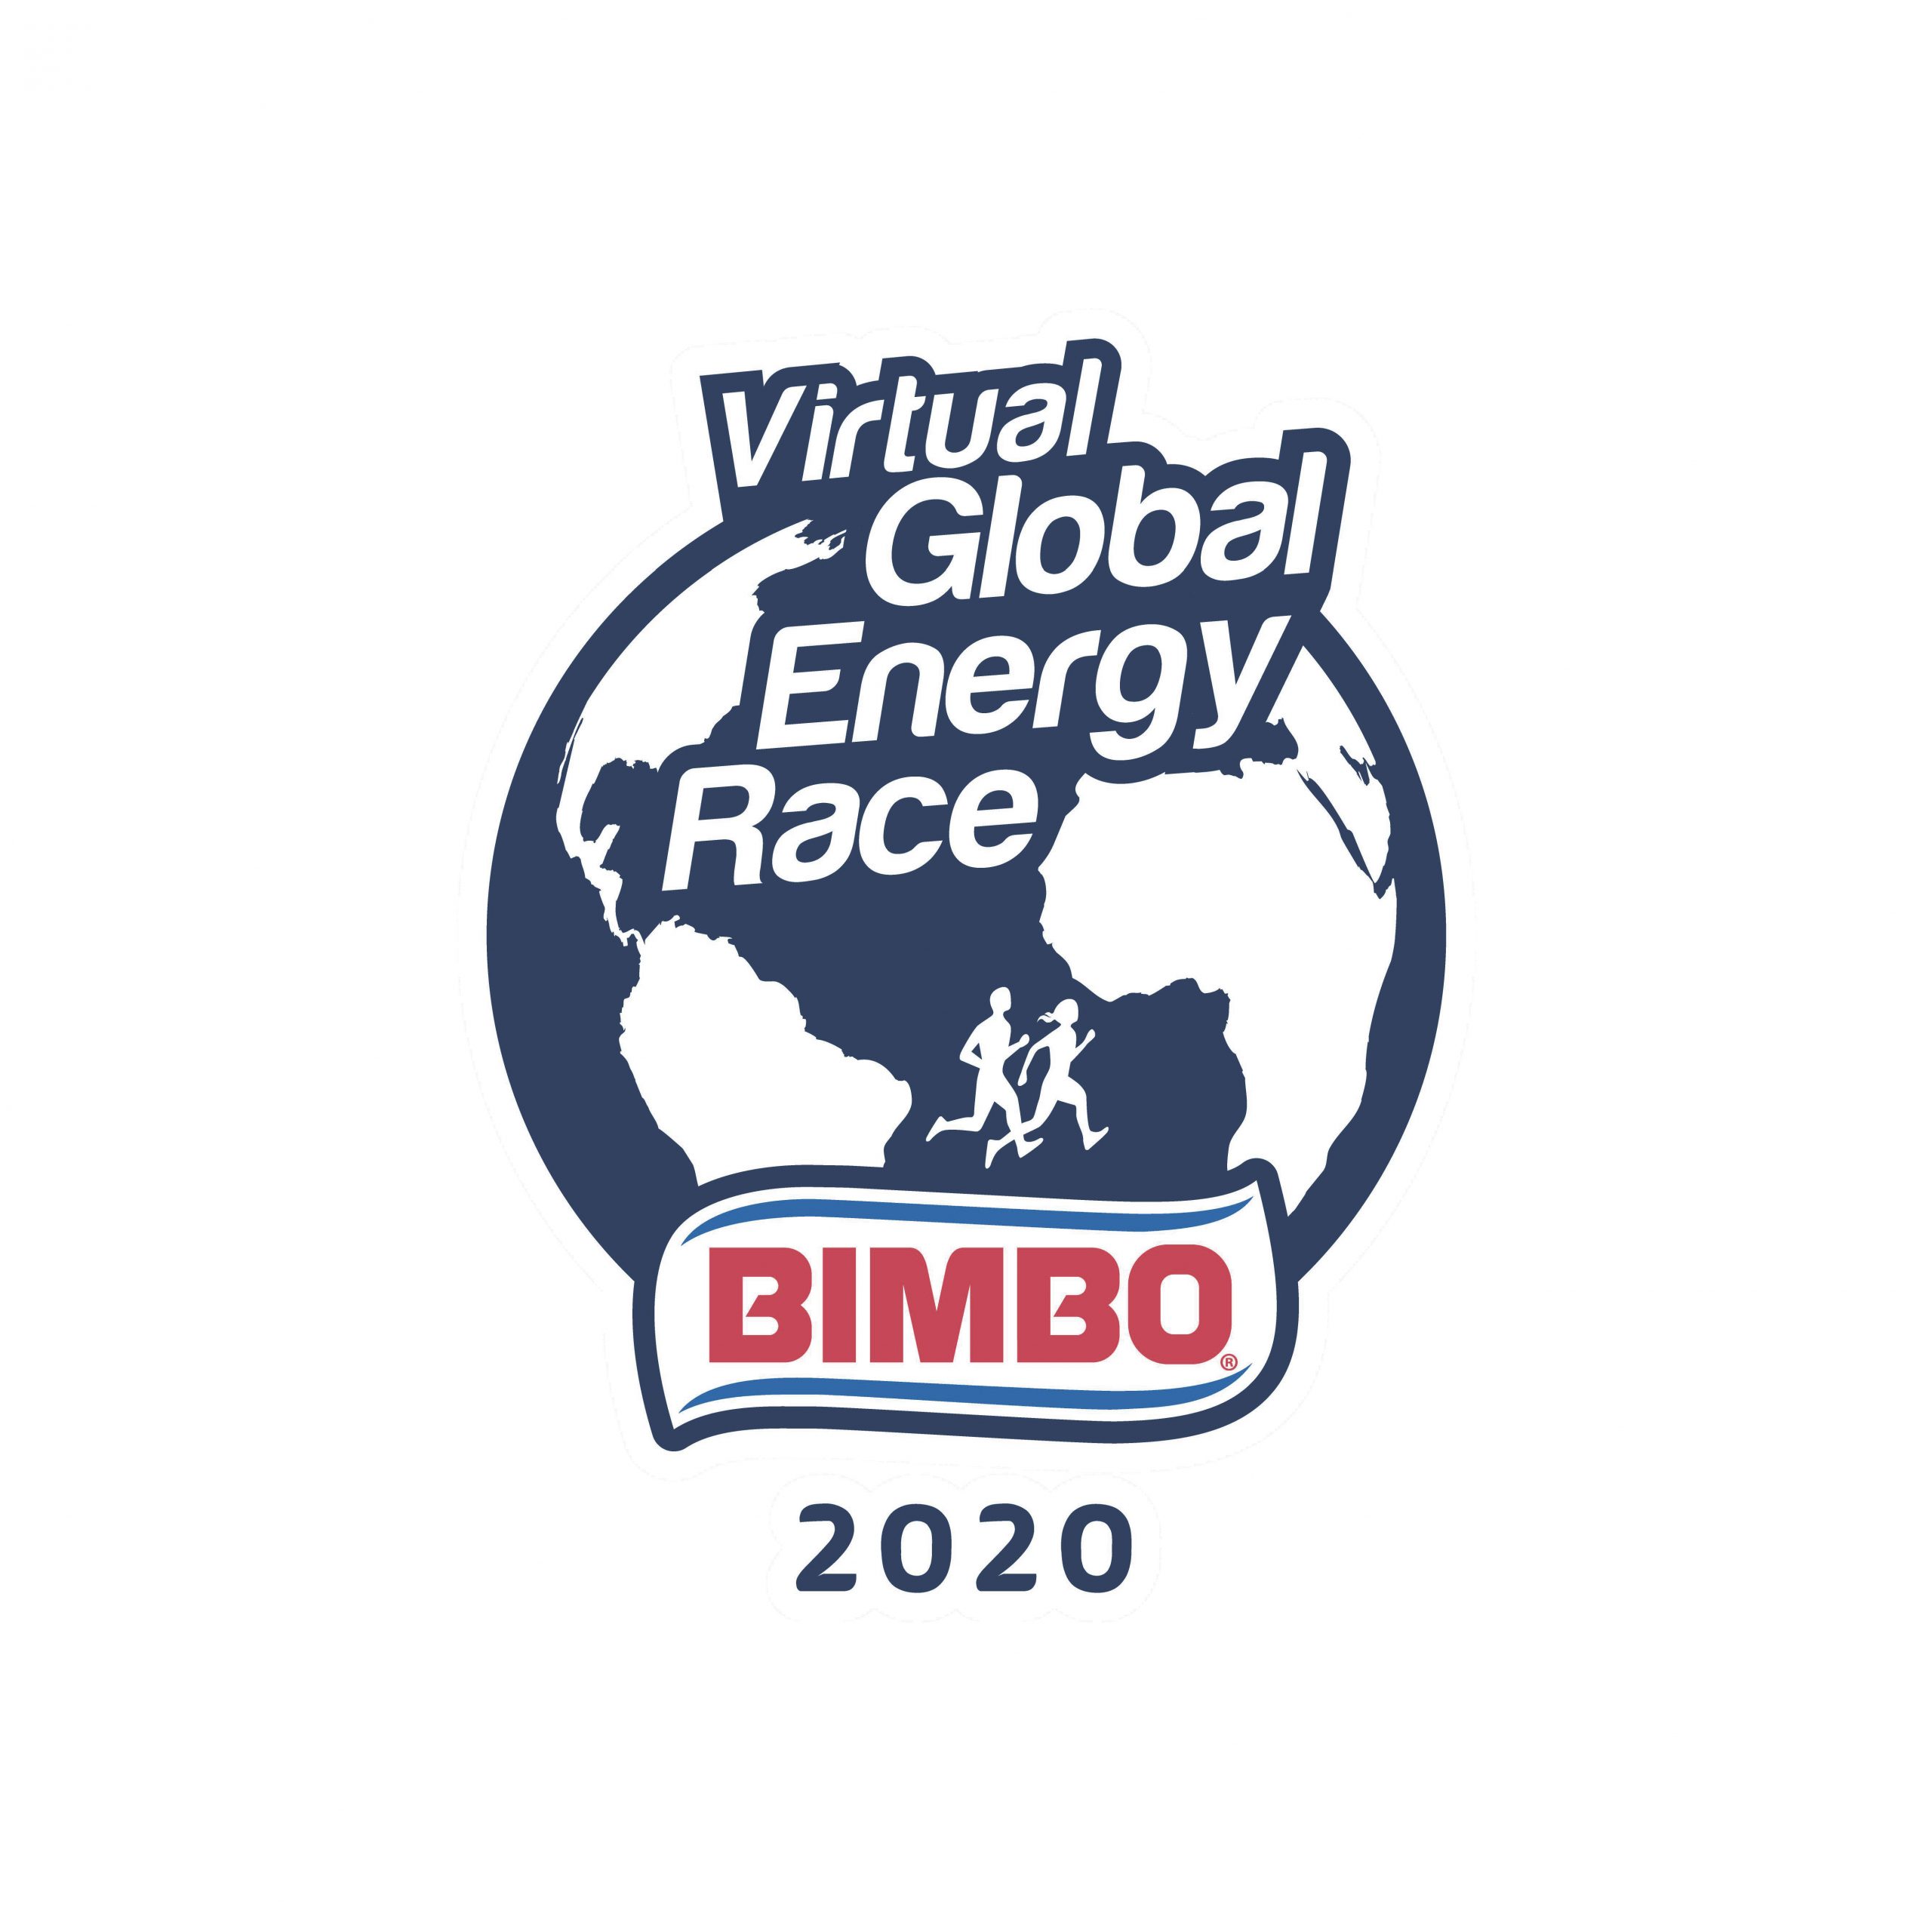 Bimbo lanza edición virtual de la Global Energy Race 2020 con un fin solidario